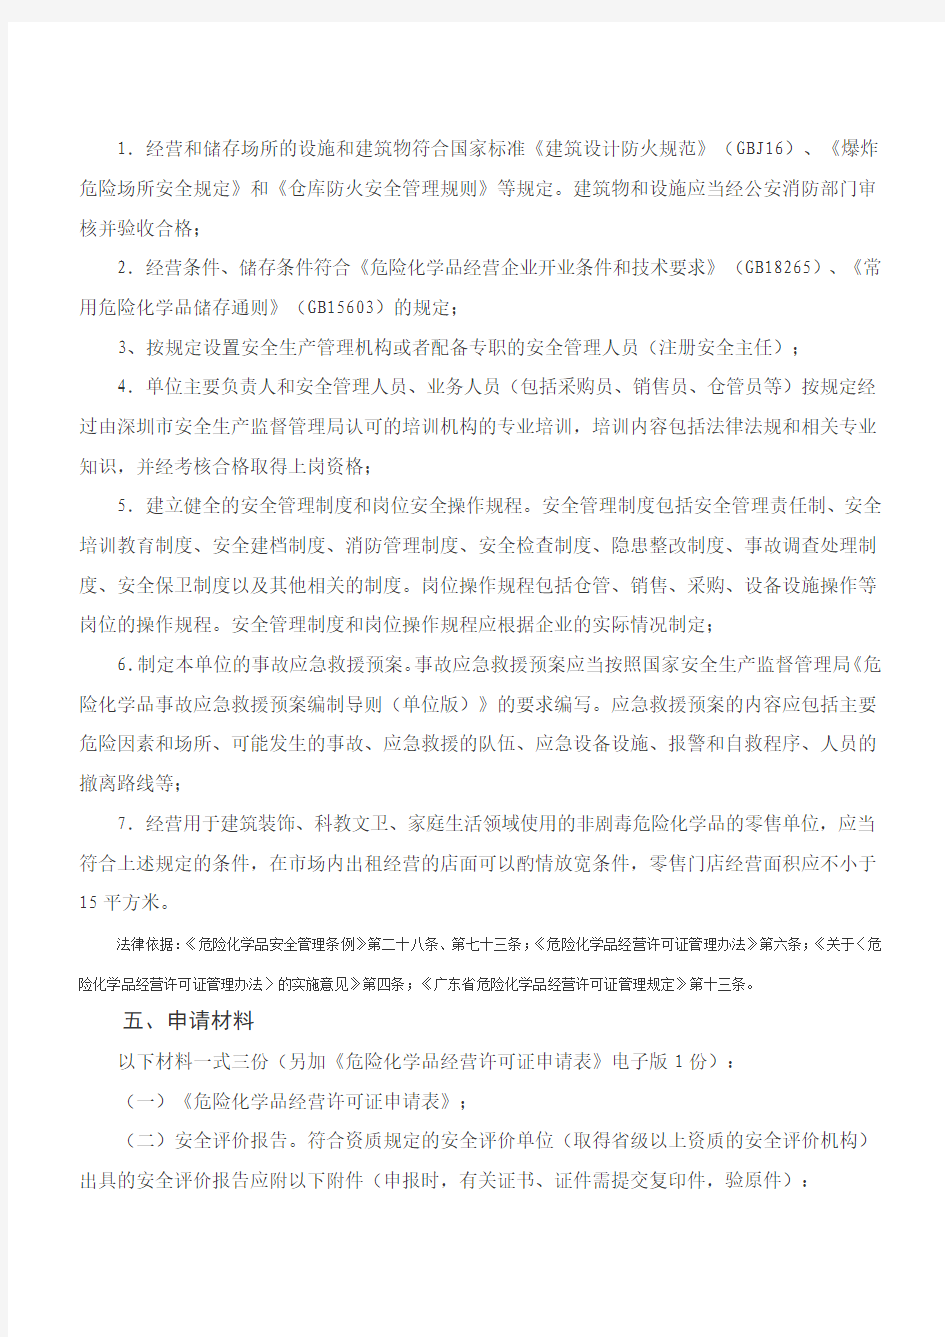 《中华人民共和国危险化学品经营许可证》(乙种)申请指南